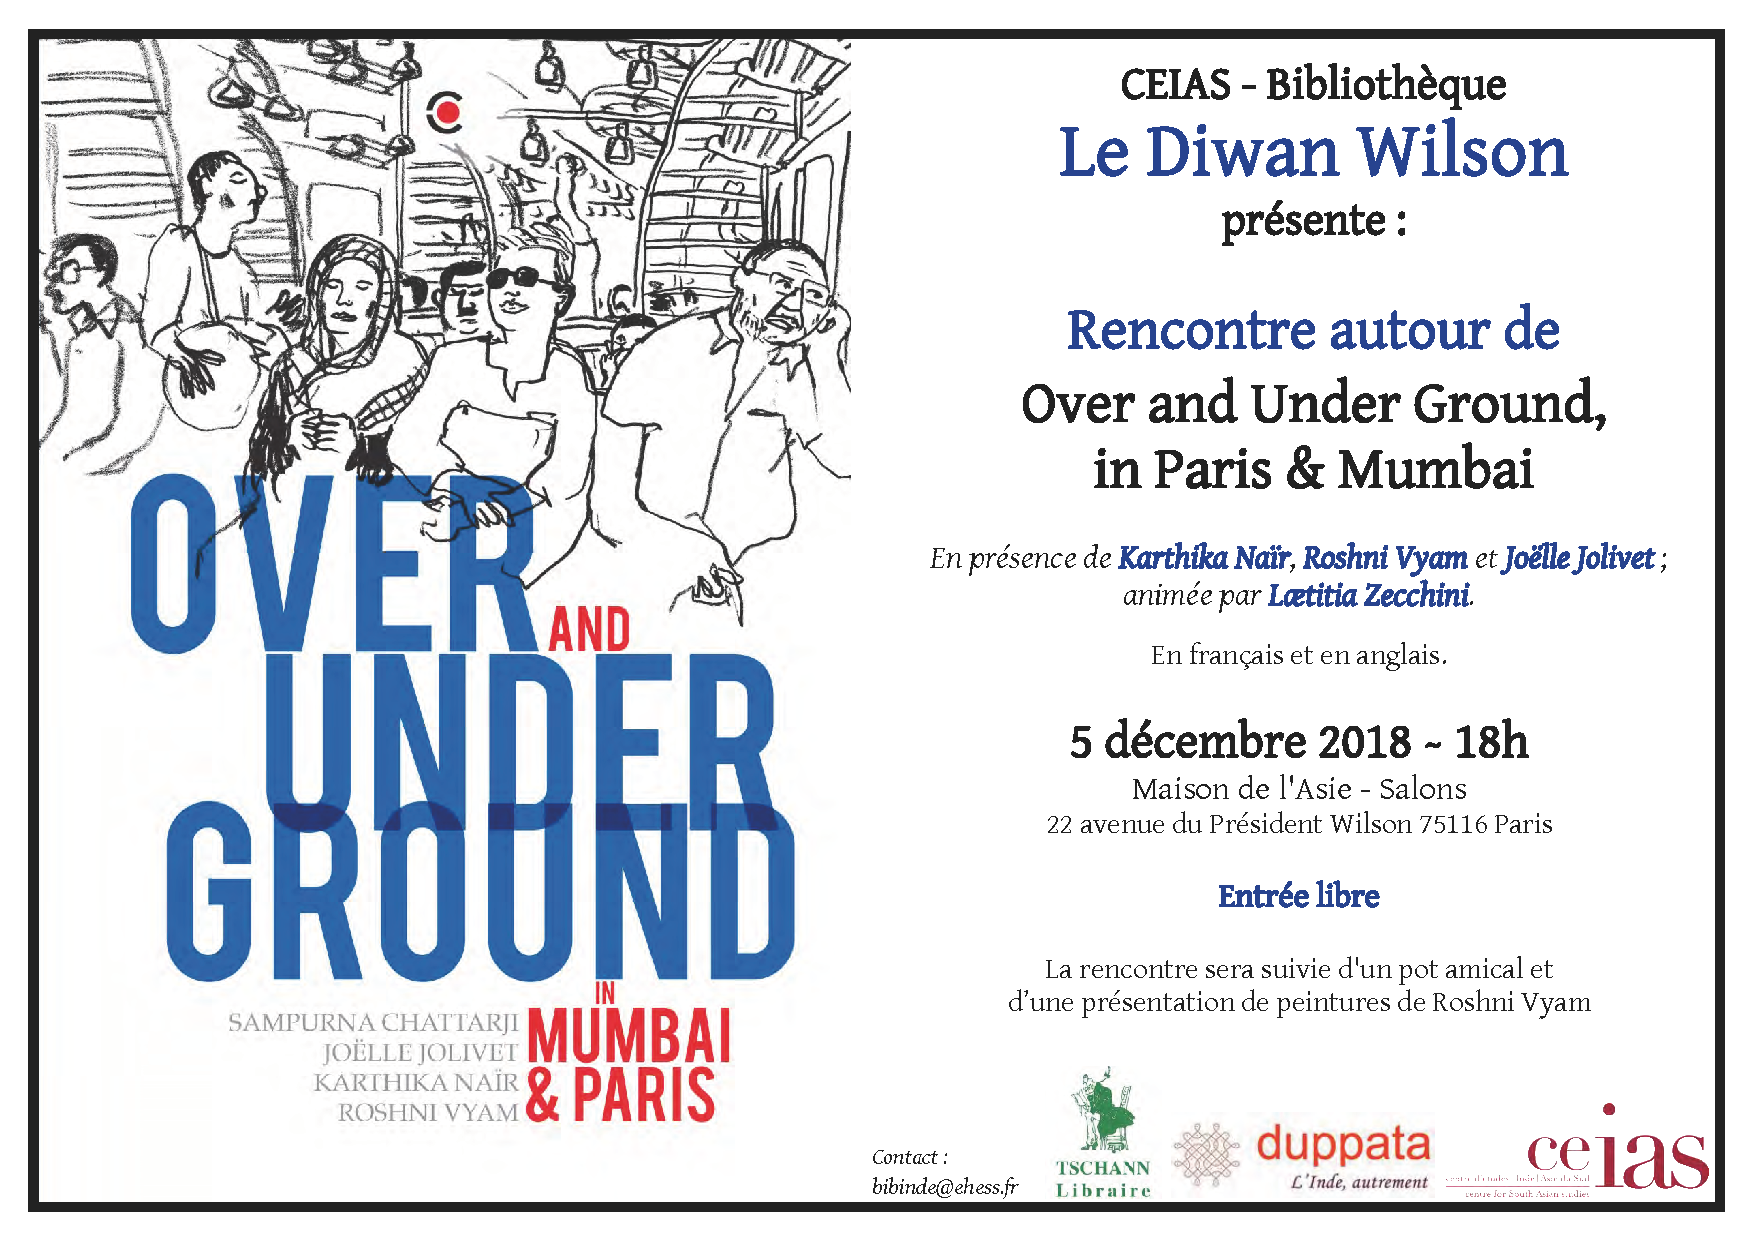 Rencontre littéraire et artistique autour de Over and Under Ground, in Paris & Mumbai